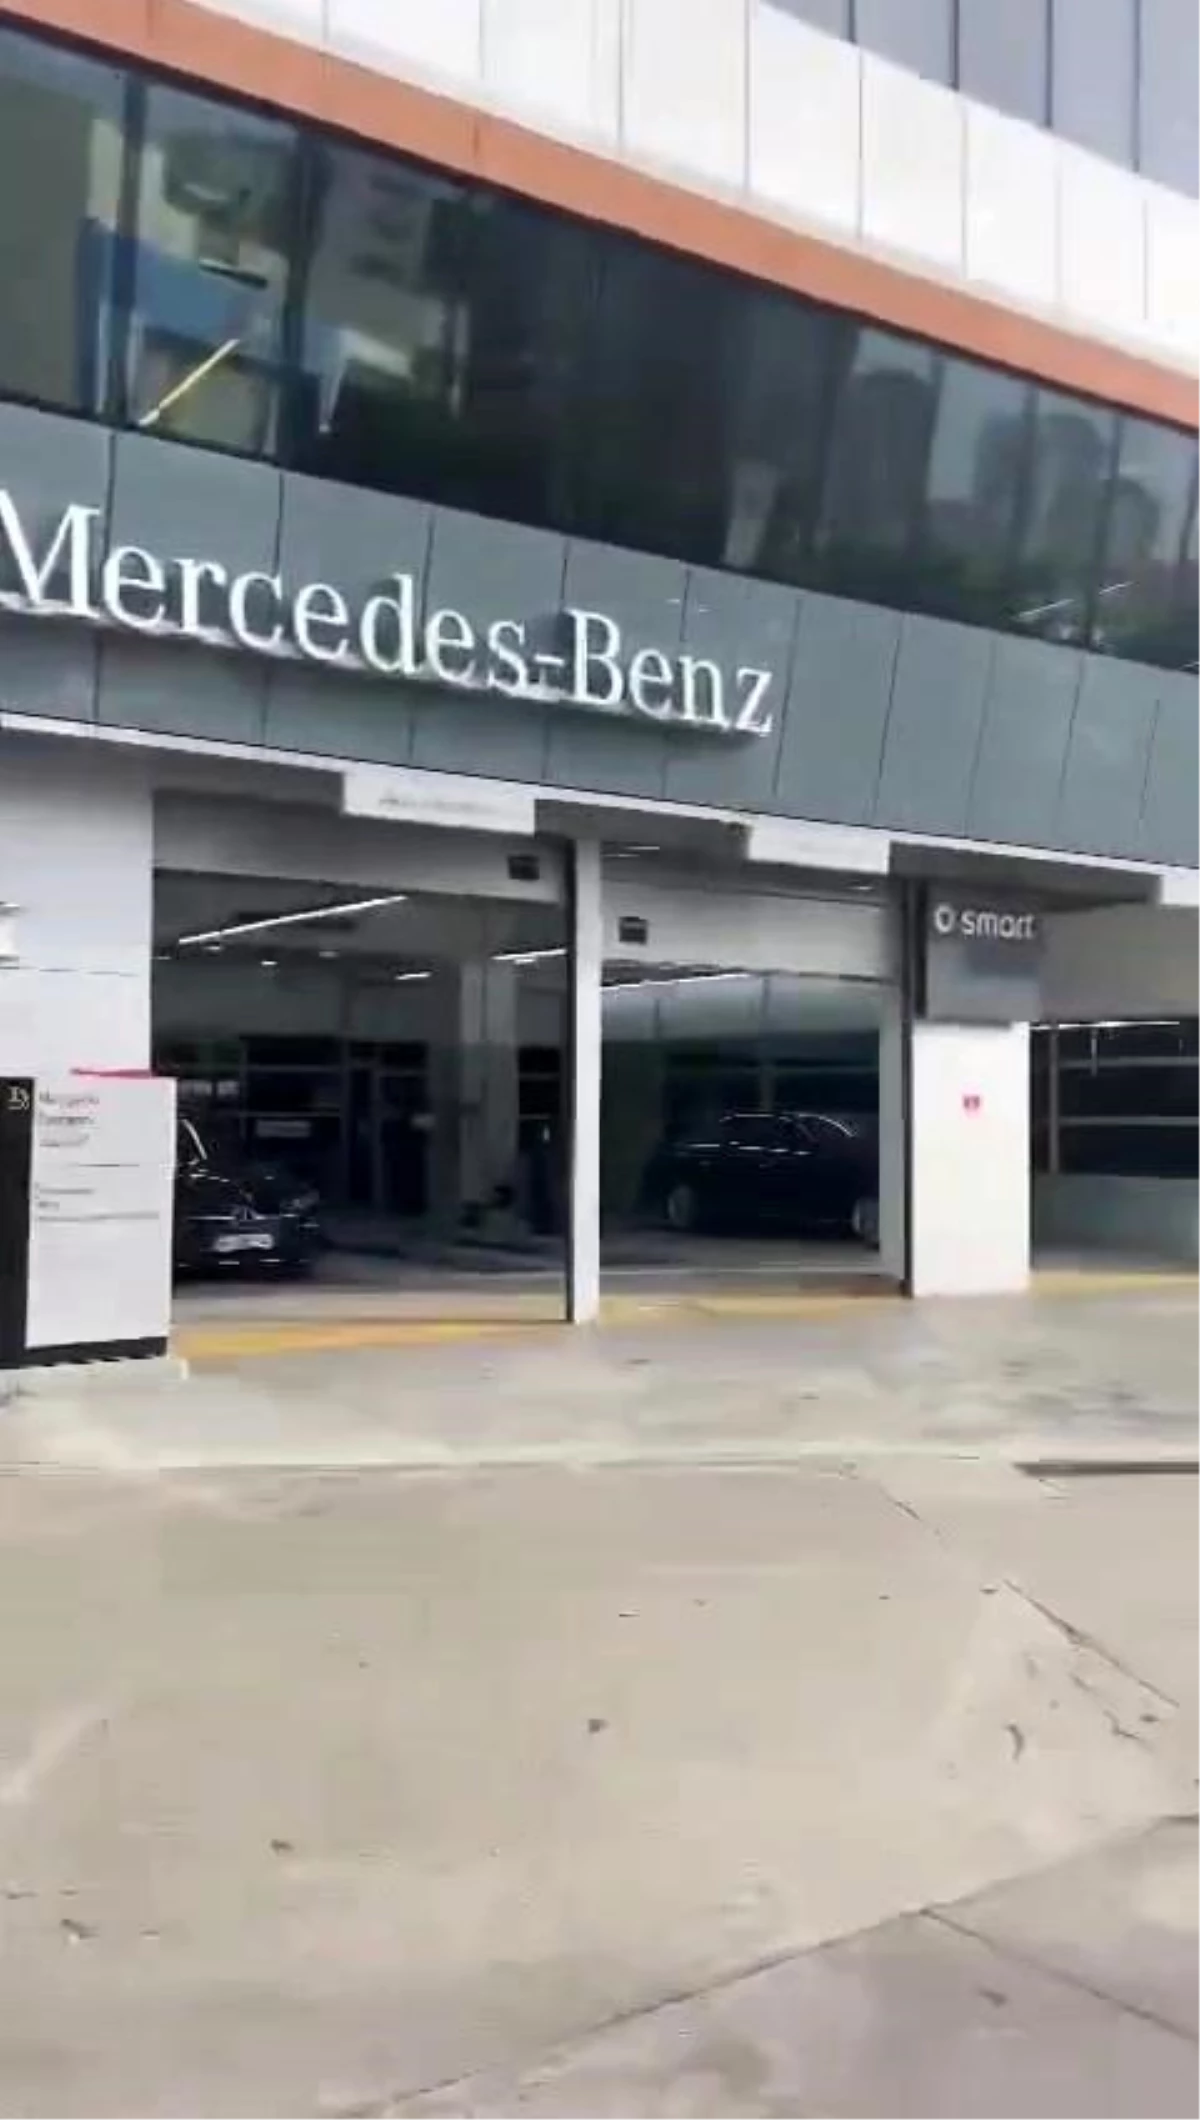 Mercedes Benz Yetkili Servisi Aracı Bakmak İstemeyince Vatandaş Sitem Etti